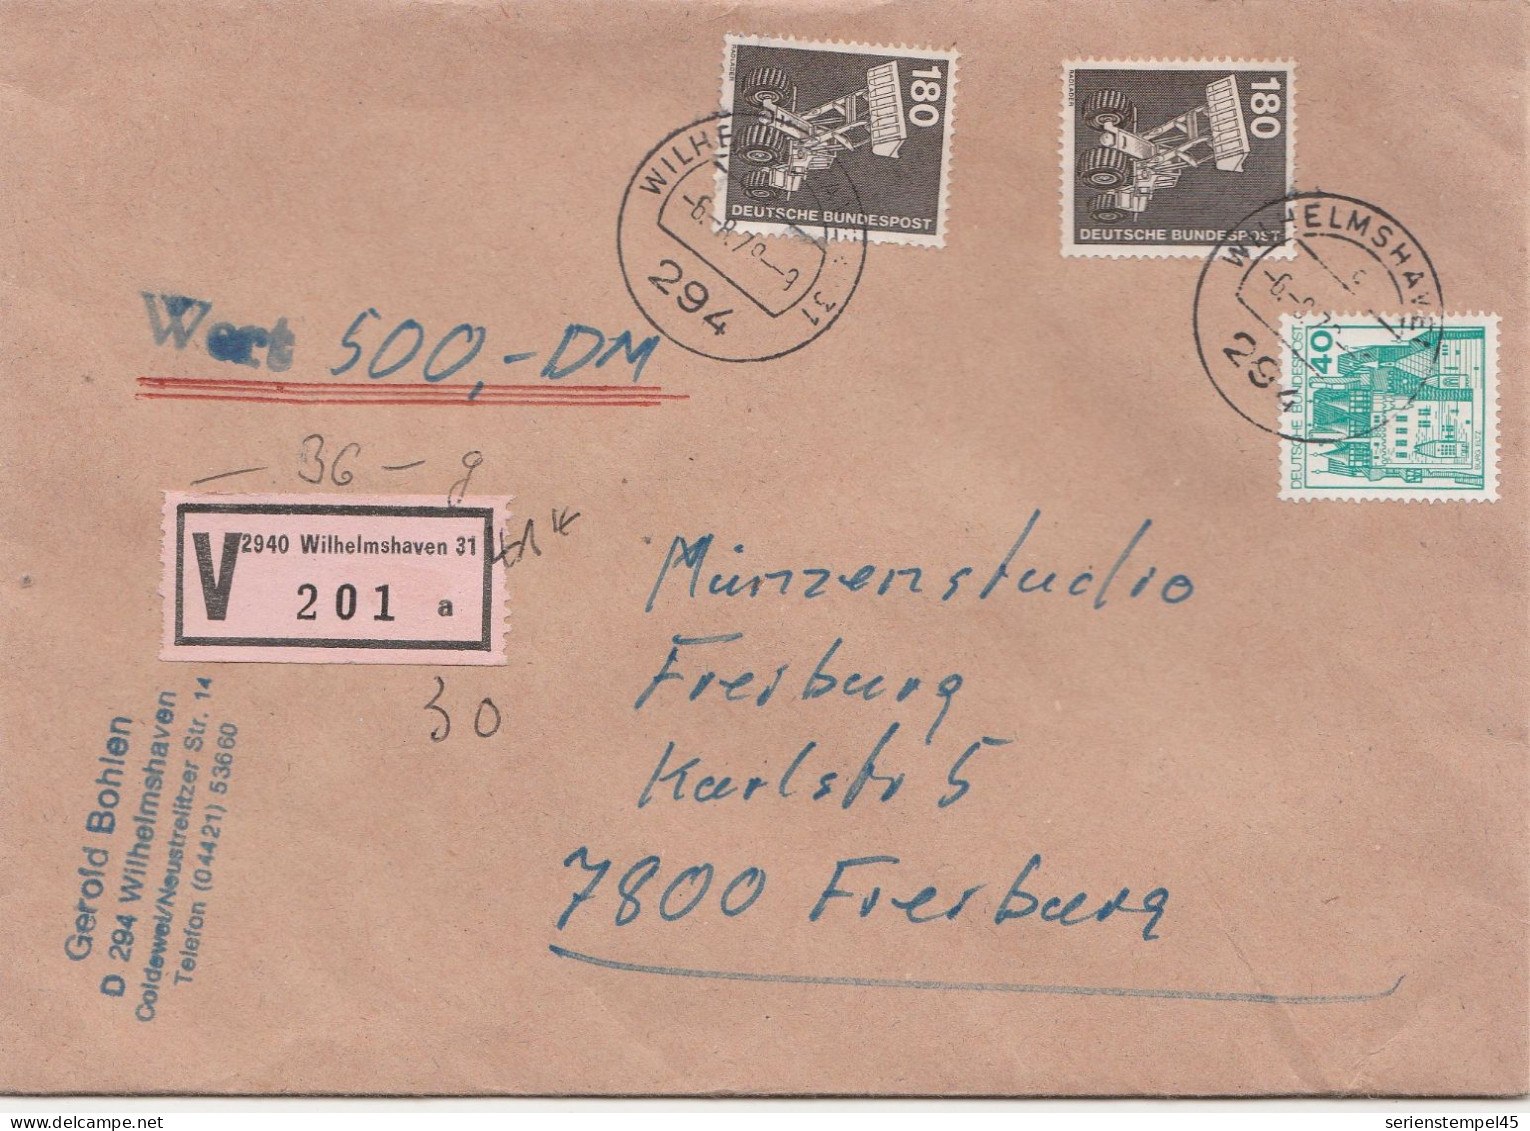 Bund Wertbrief 500 DM Mit V Zettel 2940 Wilhelmshaven Porto 4 DM 1979 - R- & V- Vignetten